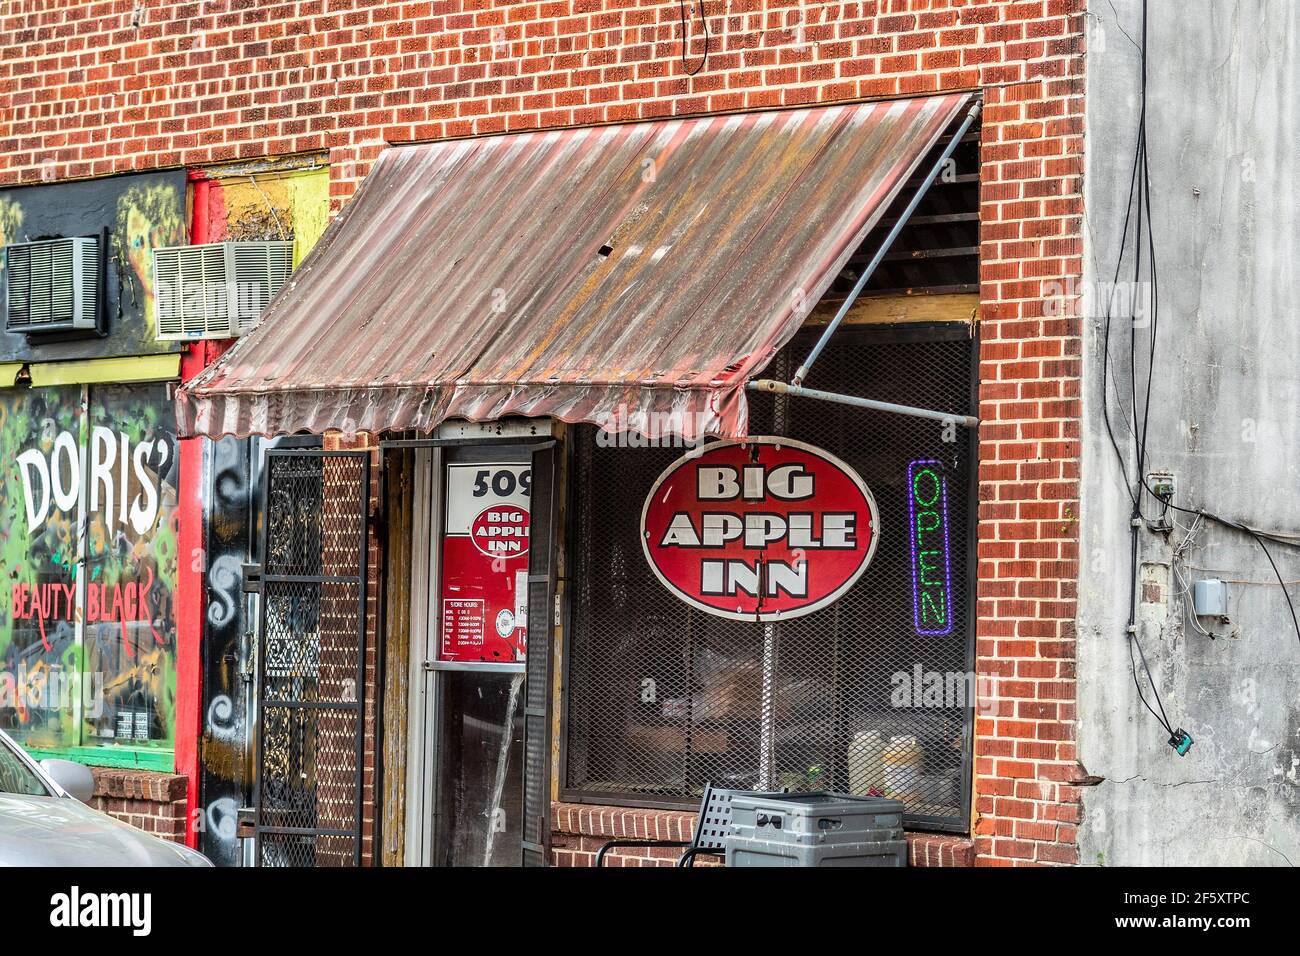 Big Apple Inn sur Farish Street, célèbre pour ses sandwichs aux oreilles de porc et comme lieu de rassemblement pendant le mouvement des droits civils, Jackson, Mississippi, États-Unis. Banque D'Images